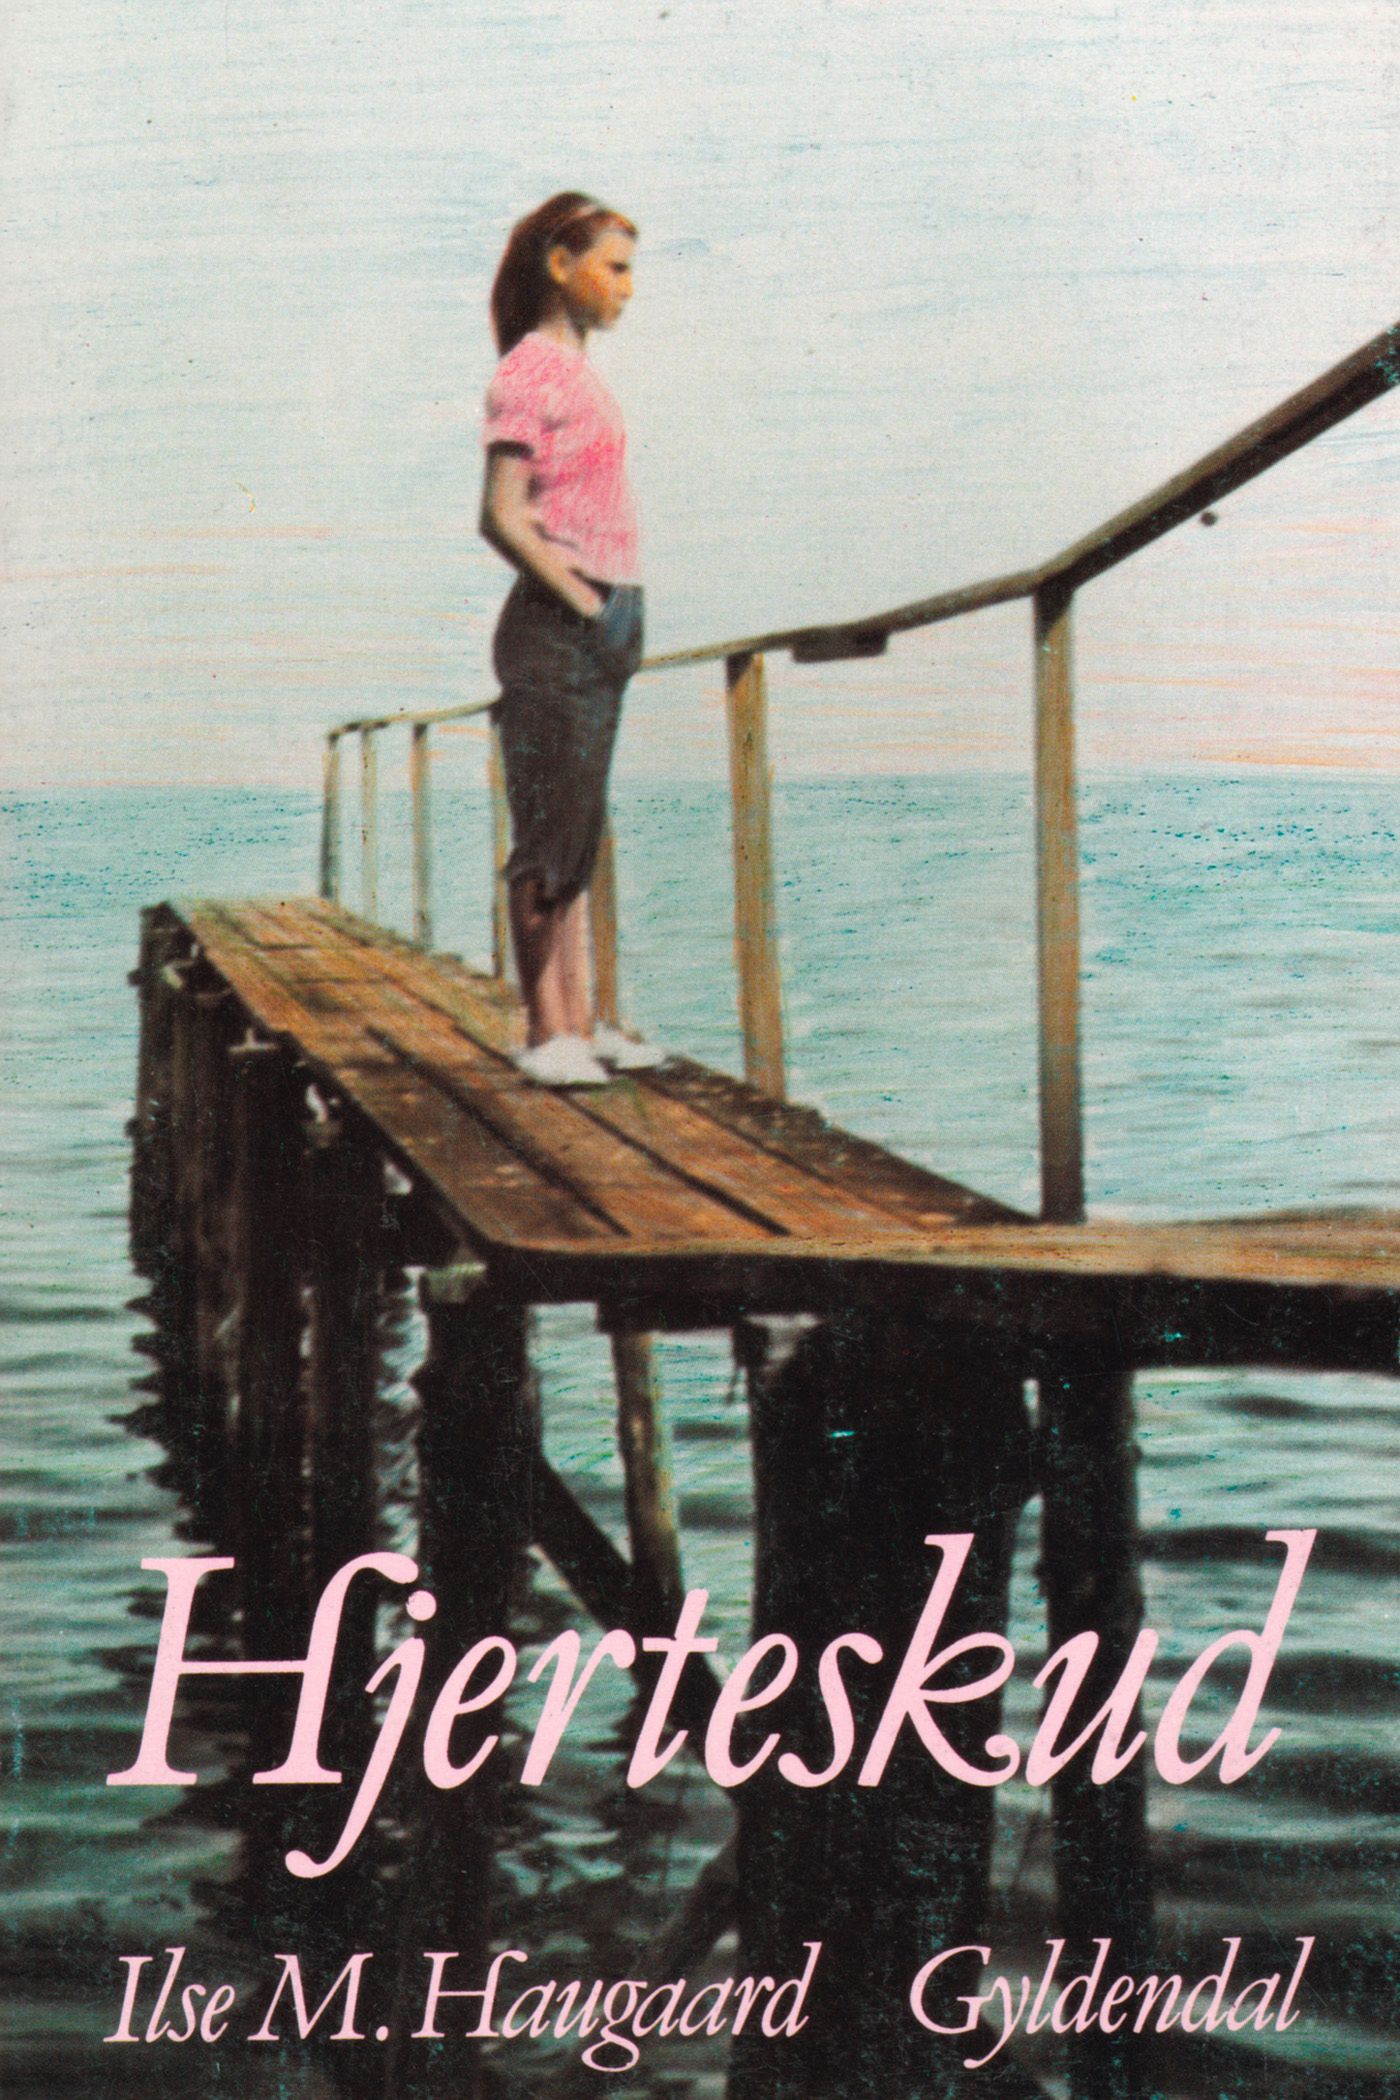 Hjerteskud, eBook by Ilse M. Haugaard